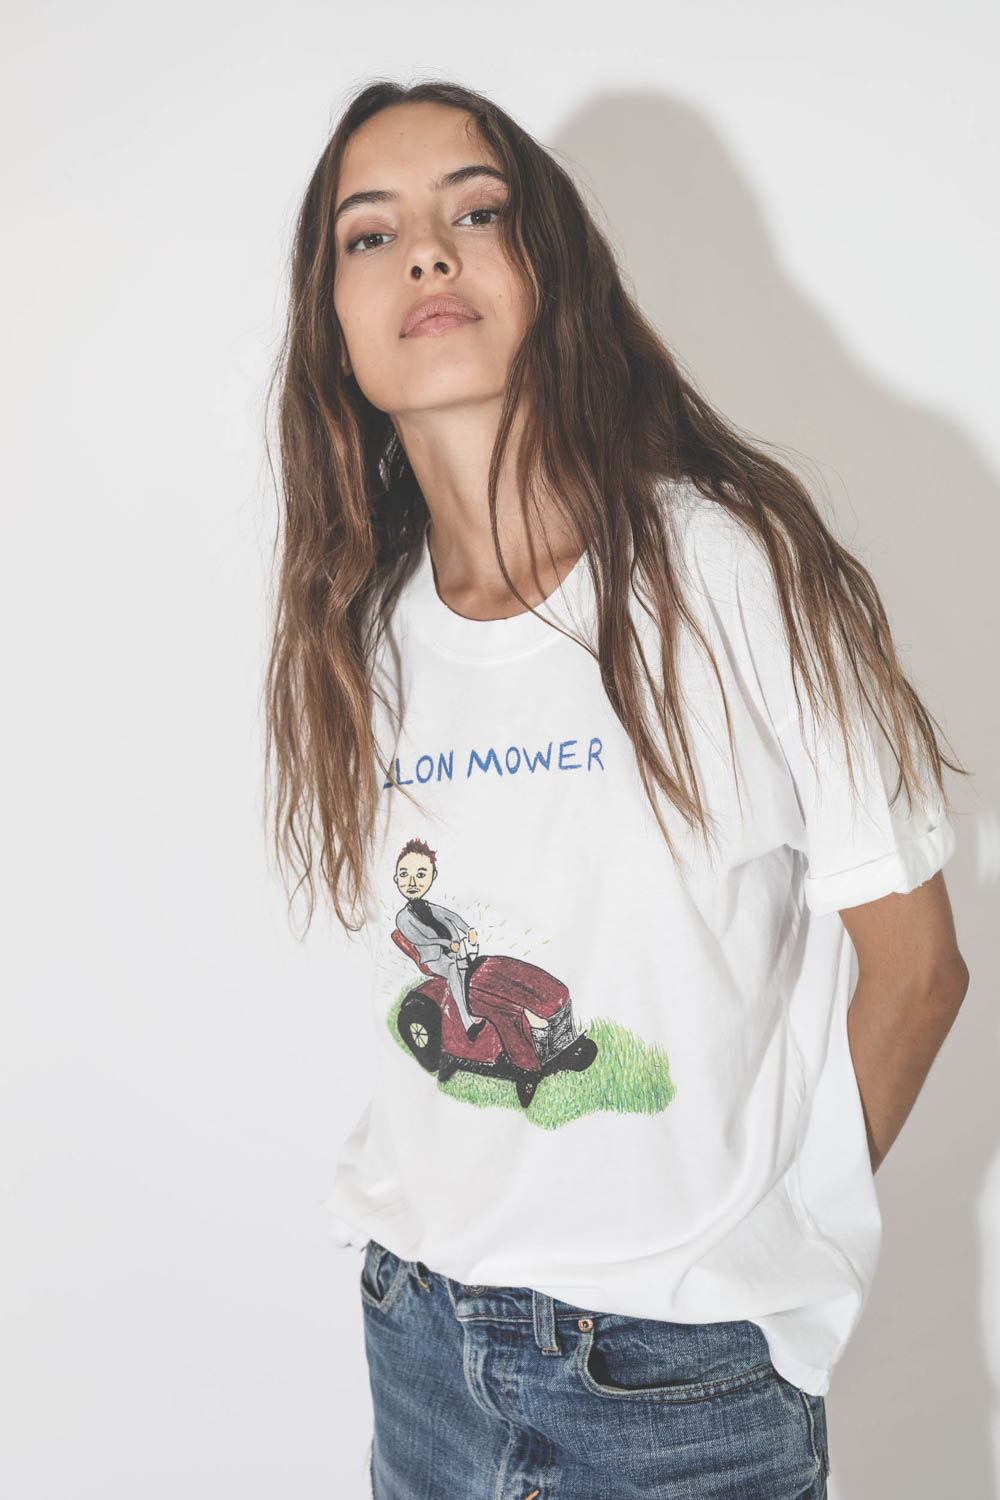 Tee-shirt humouristique manches courtes blanc Elon Mower Unfortunate Portrait. Détail du dessin.